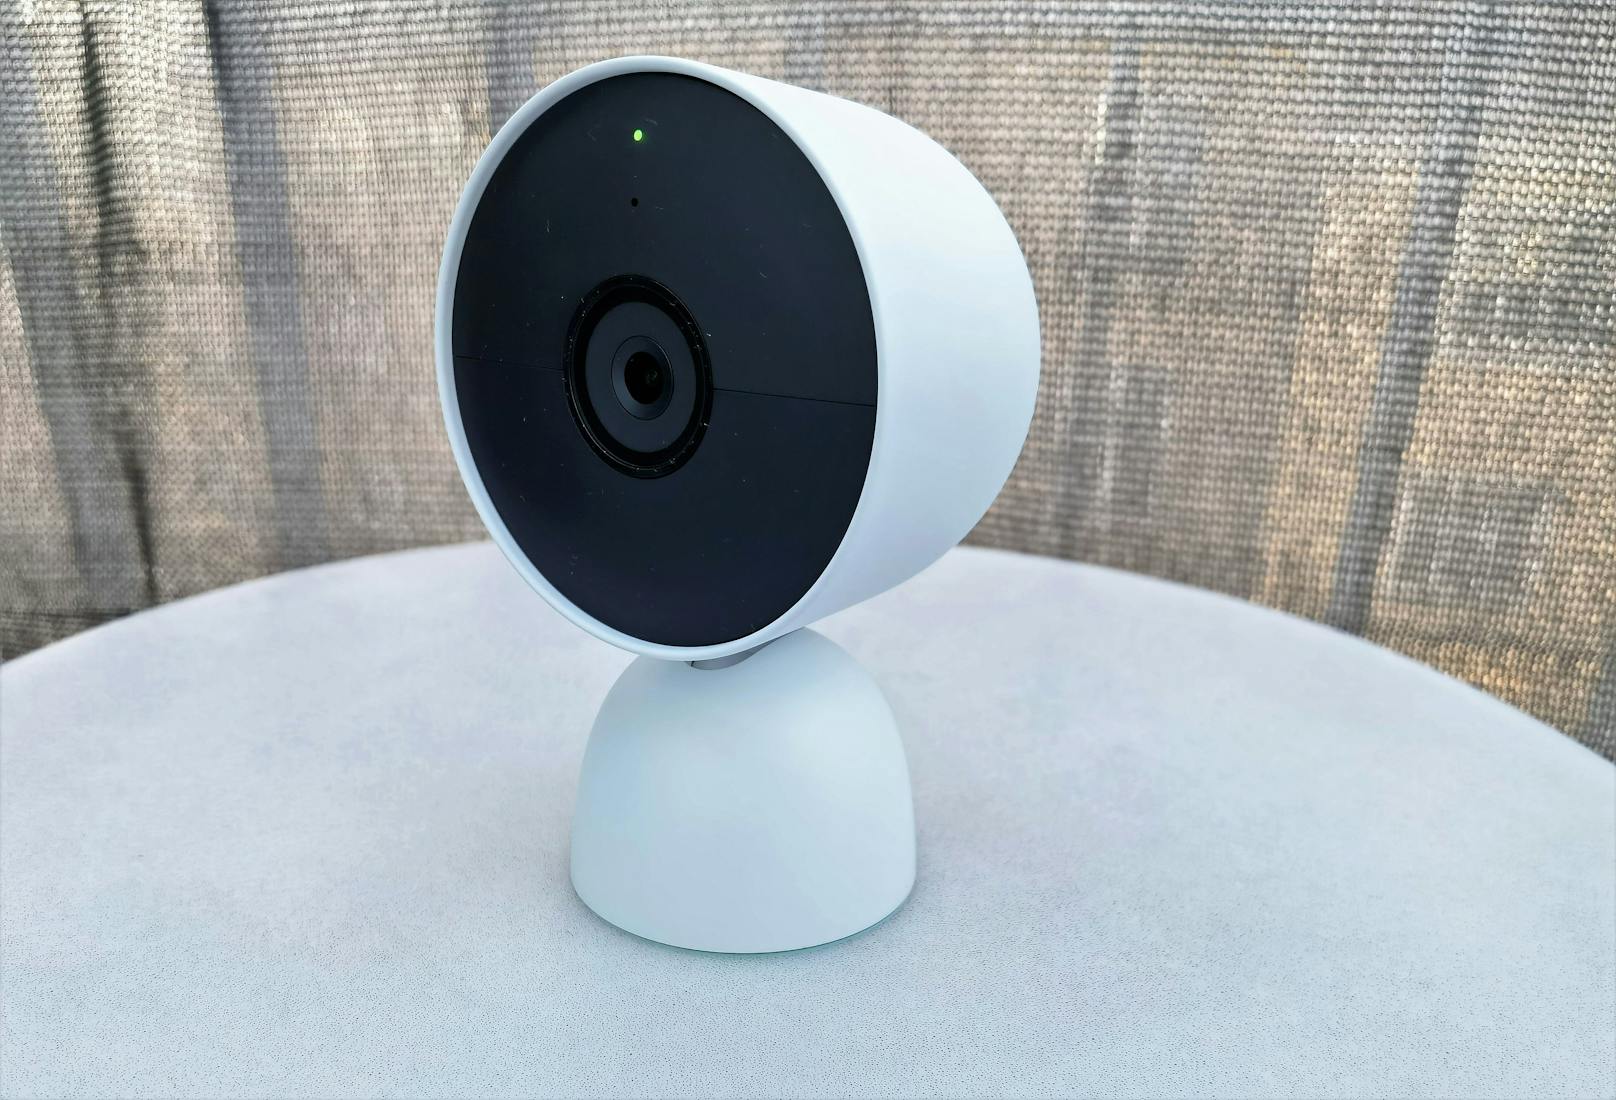 Die neue Nest Cam von Google ist in Österreich erhältlich. Die Kamera kann per Akku betrieben werden und zeigt sich zudem flexibel, ob sie in Innenräumen oder Außenbereichen eingesetzt wird.